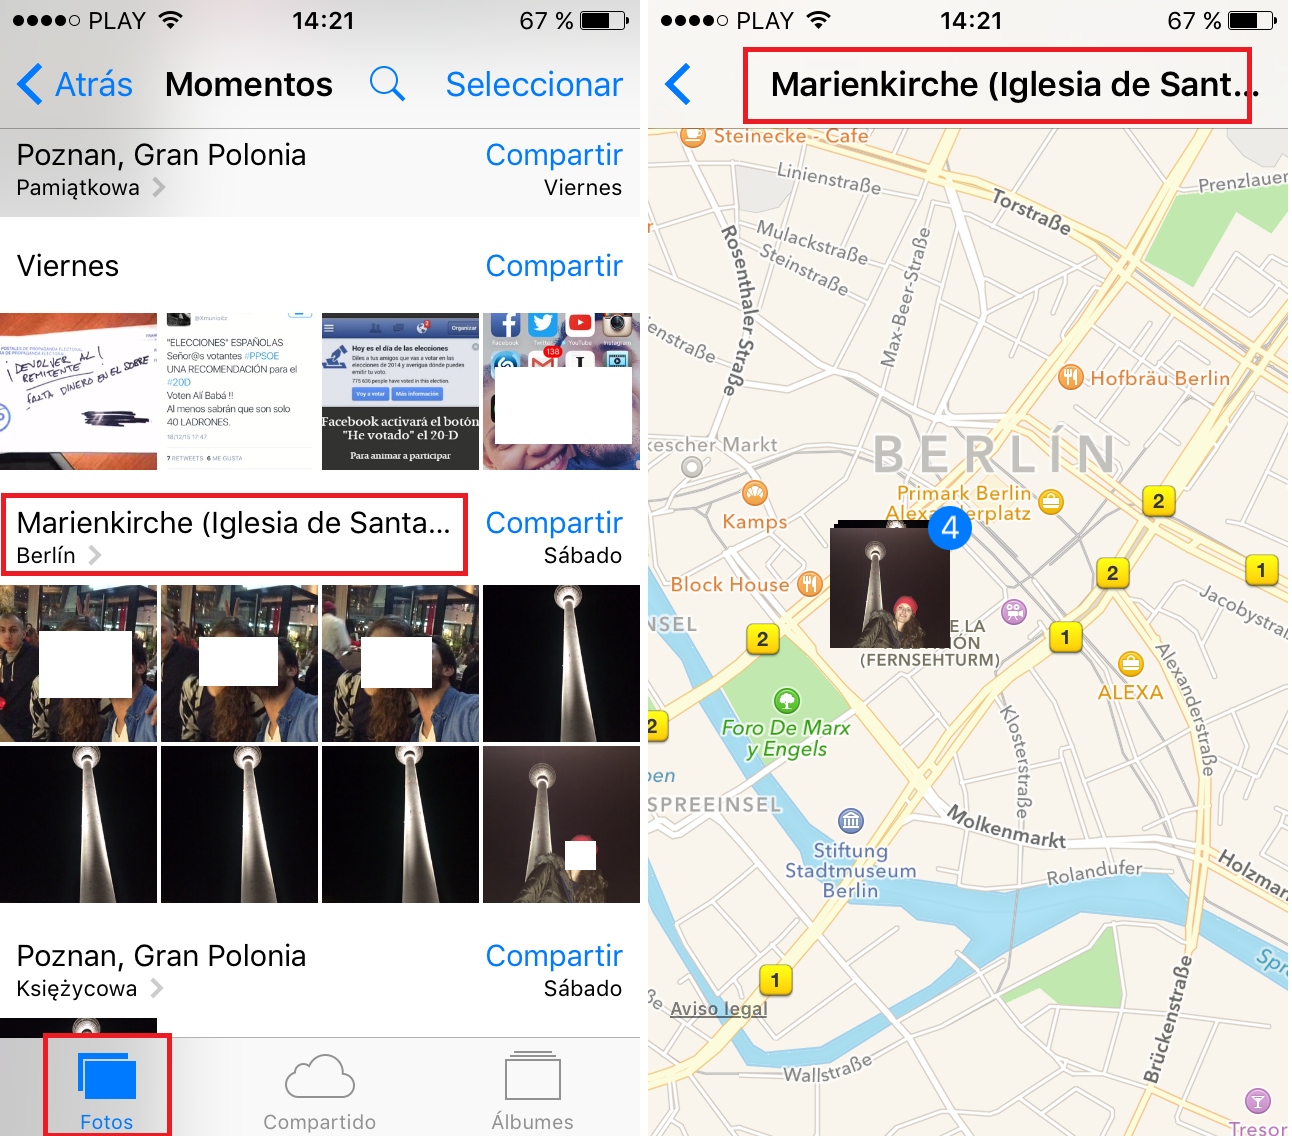 Buscar fotos en tu iPhone o iPad haciendo uso de Siri